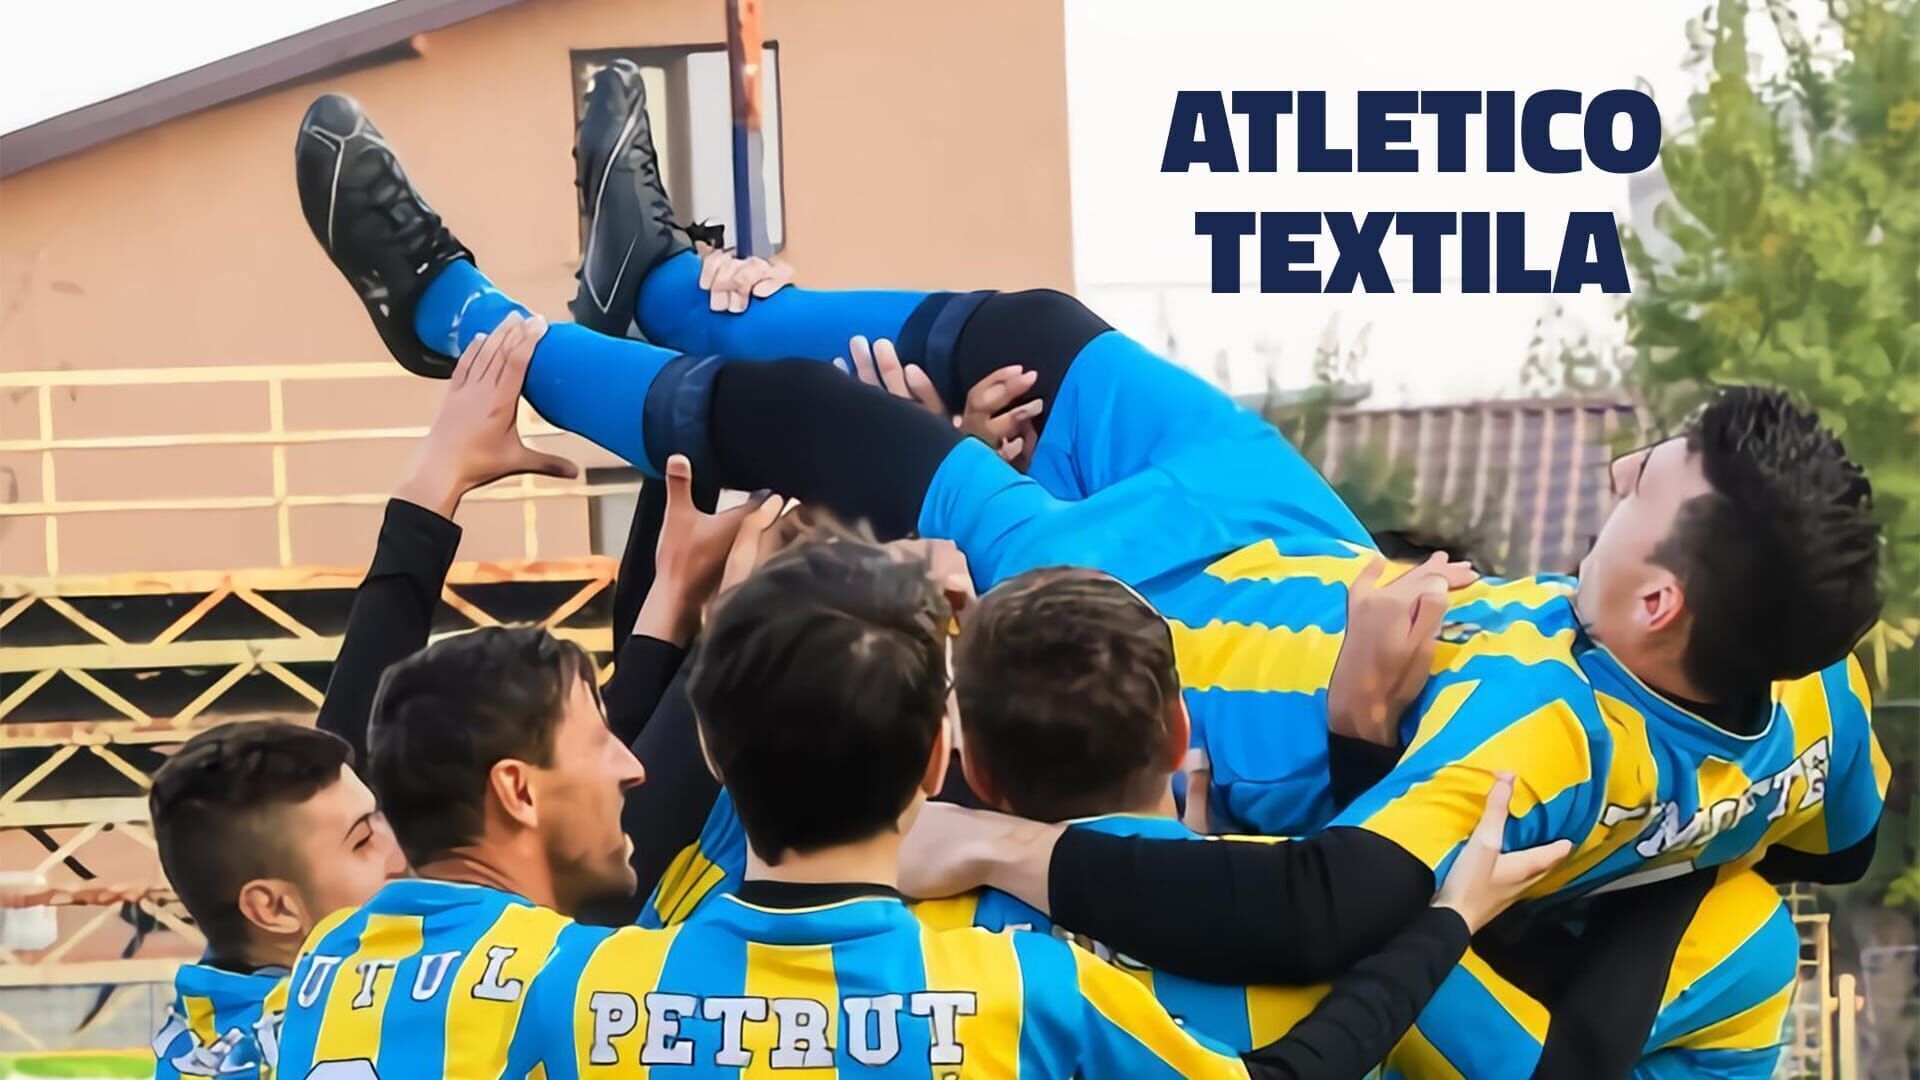 Atletico Textila - Corpul uman e ca un templu